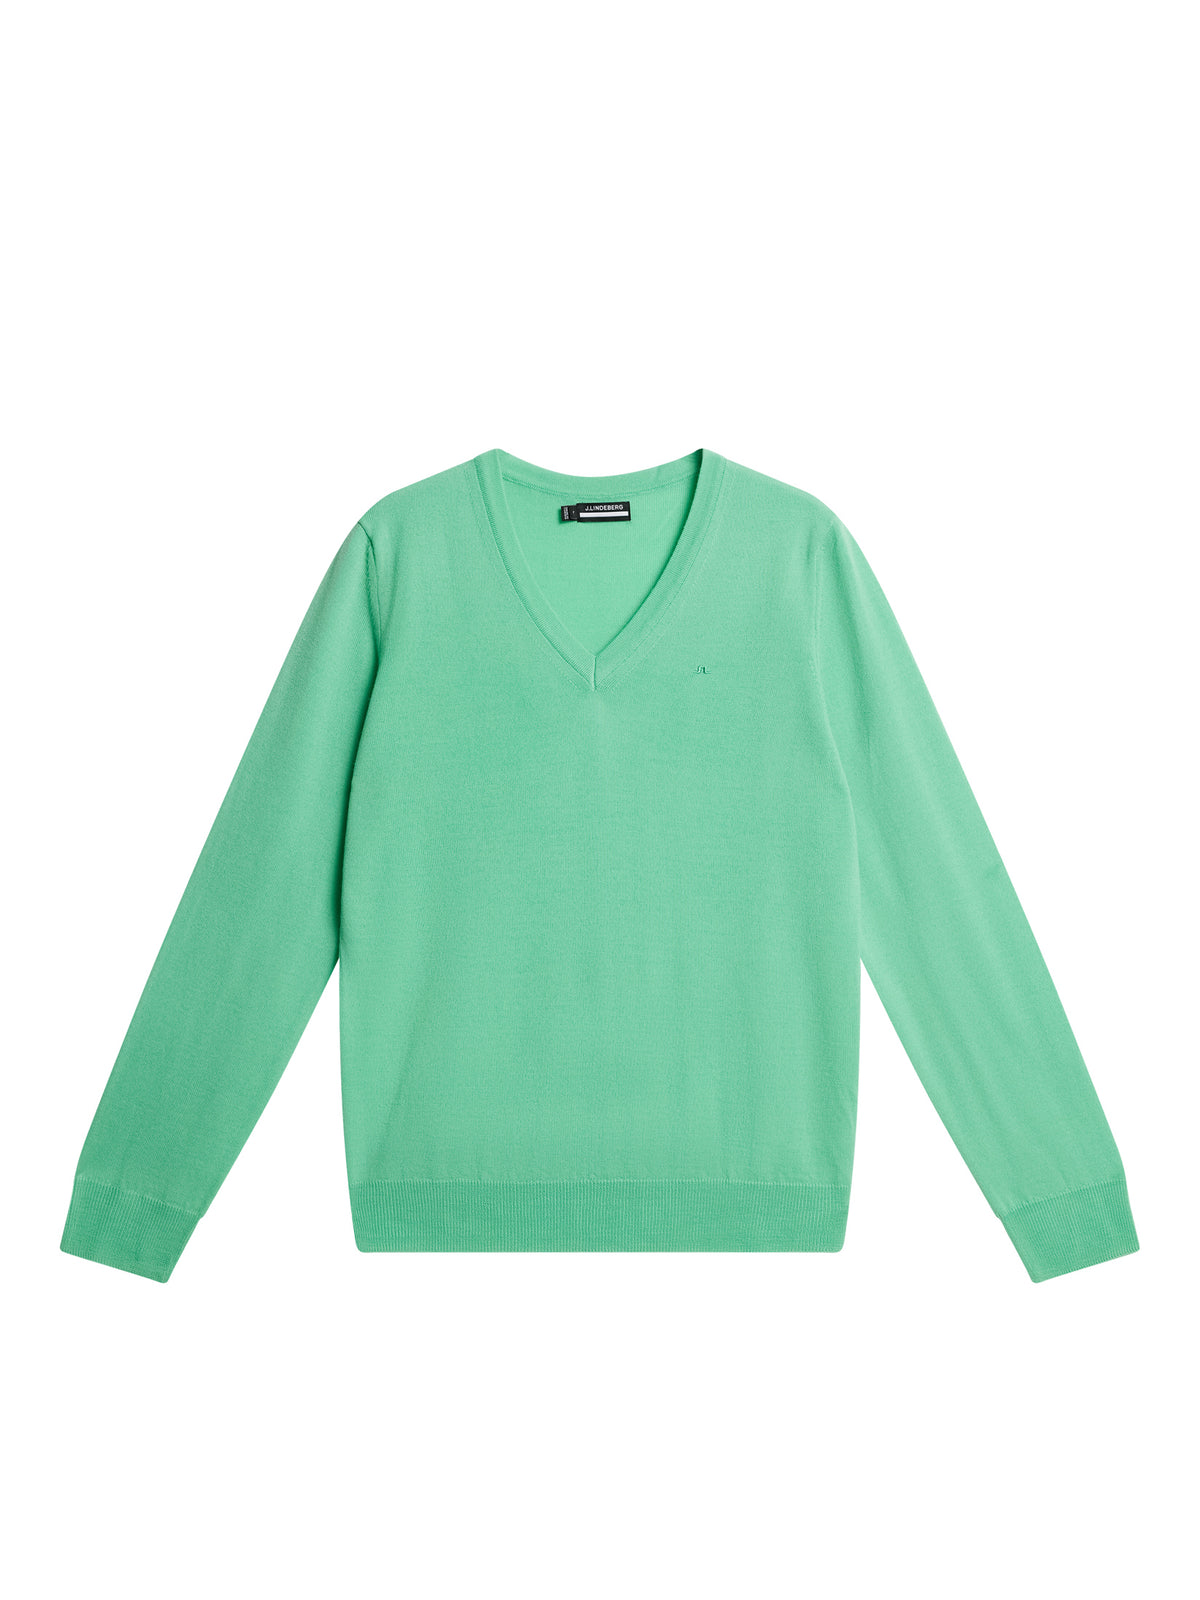 Amaya Knitted Sweater / Jade Cream